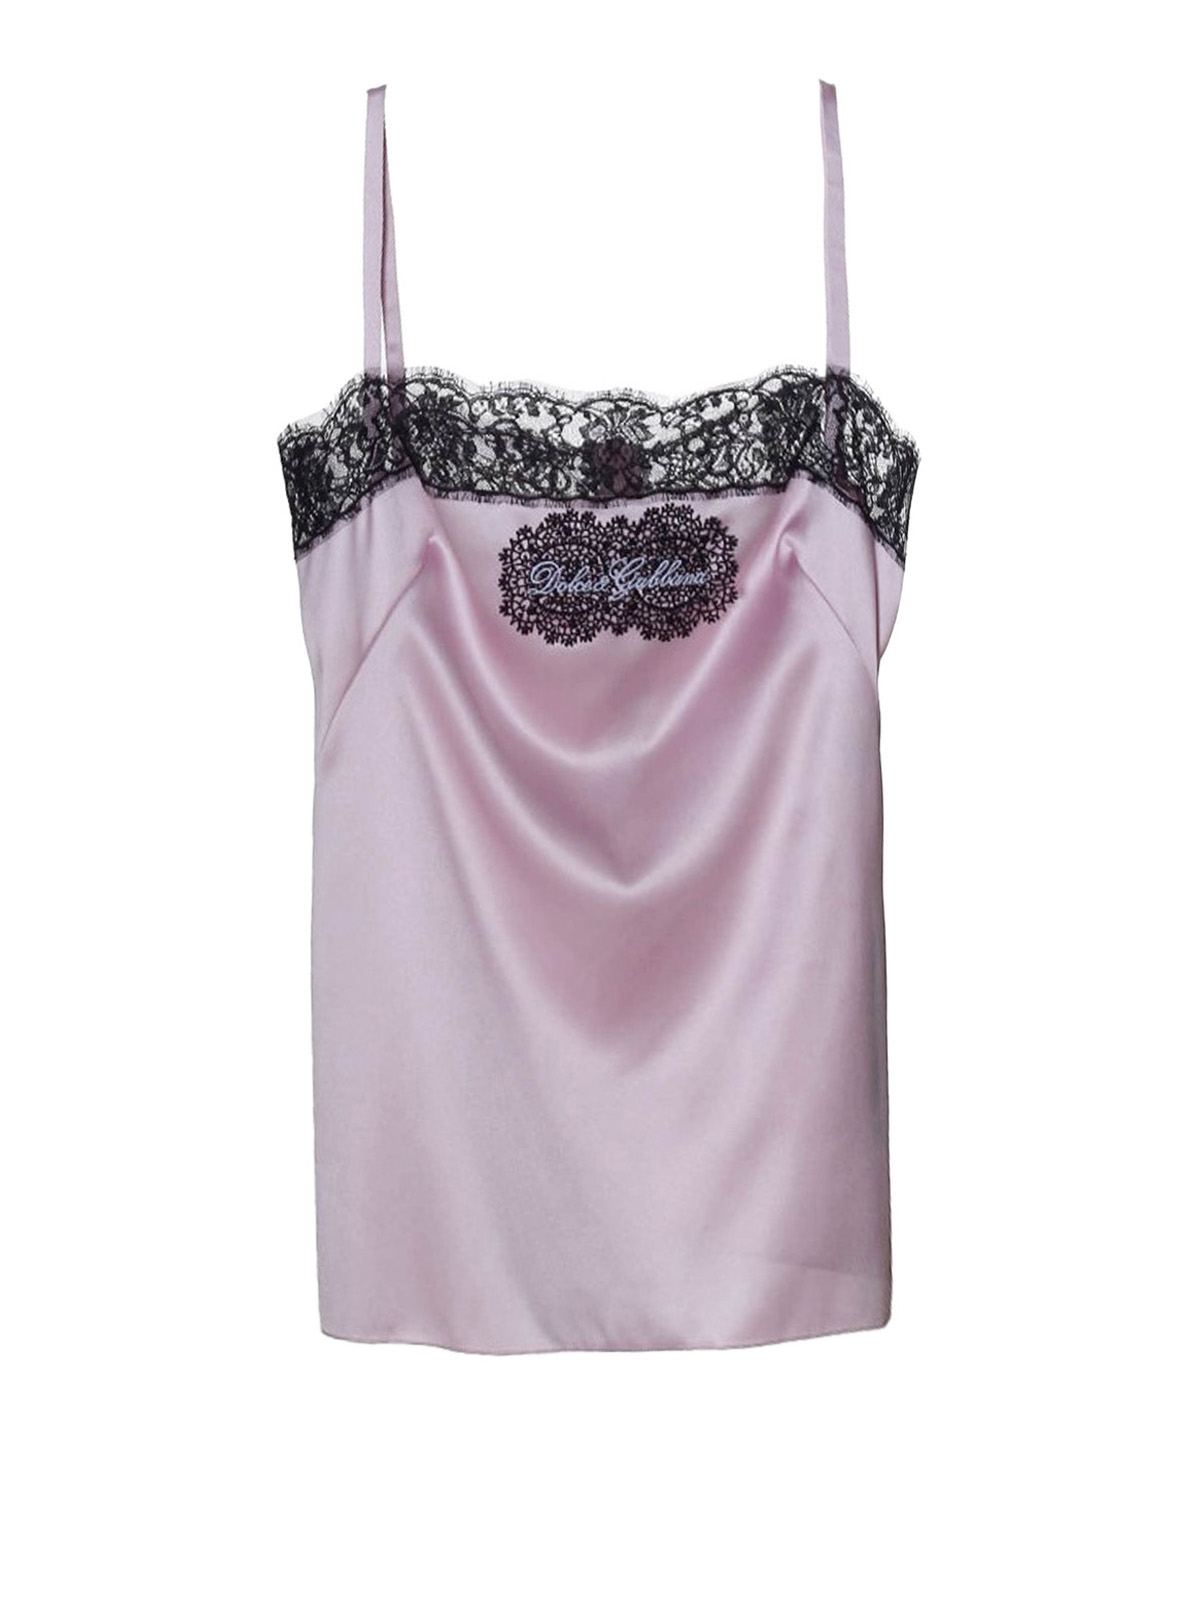 Beskæftiget Amazon Jungle Uberettiget Tops & Tank tops Dolce & Gabbana - Lace trim pink silk satin top -  F71K3TFURAGF1452